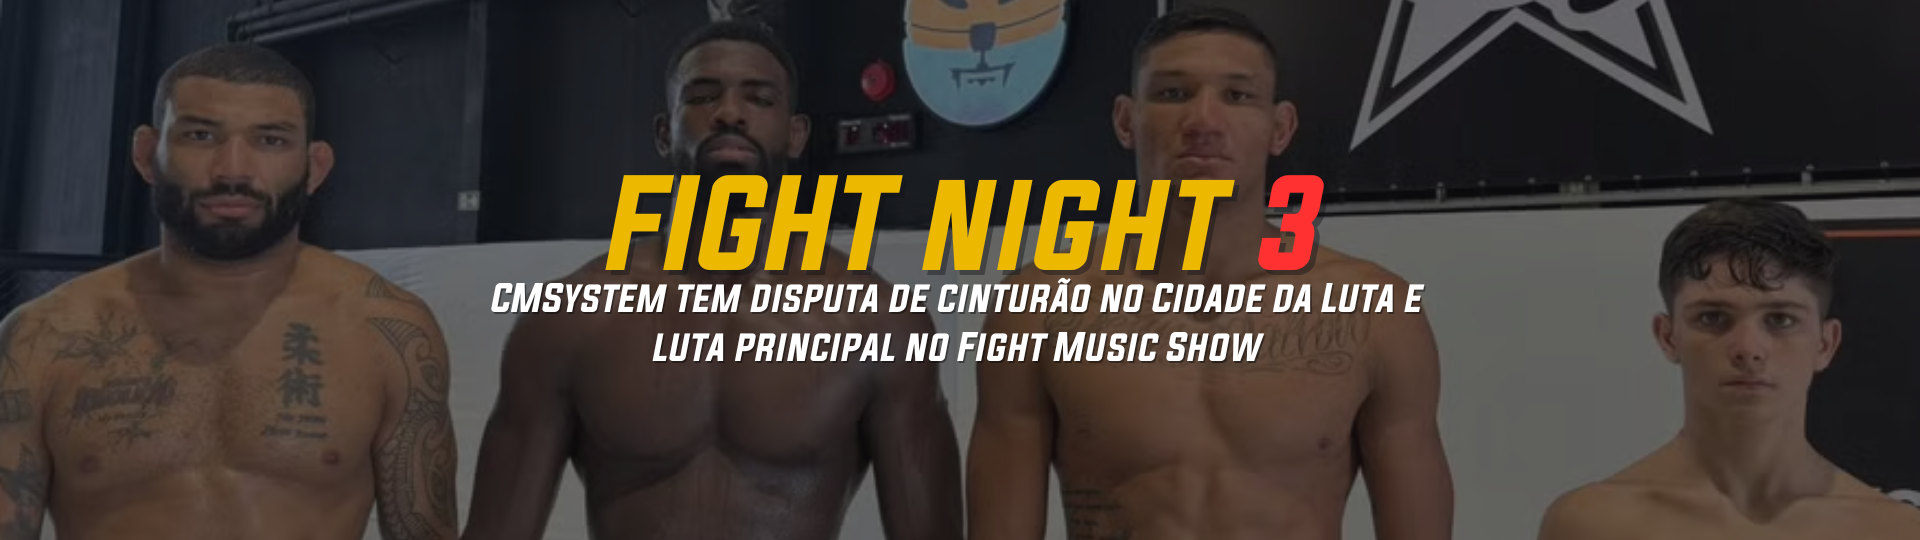 CMSystem tem disputa de cinturao no Cidade da Luta e luta principal no Fight Music Show